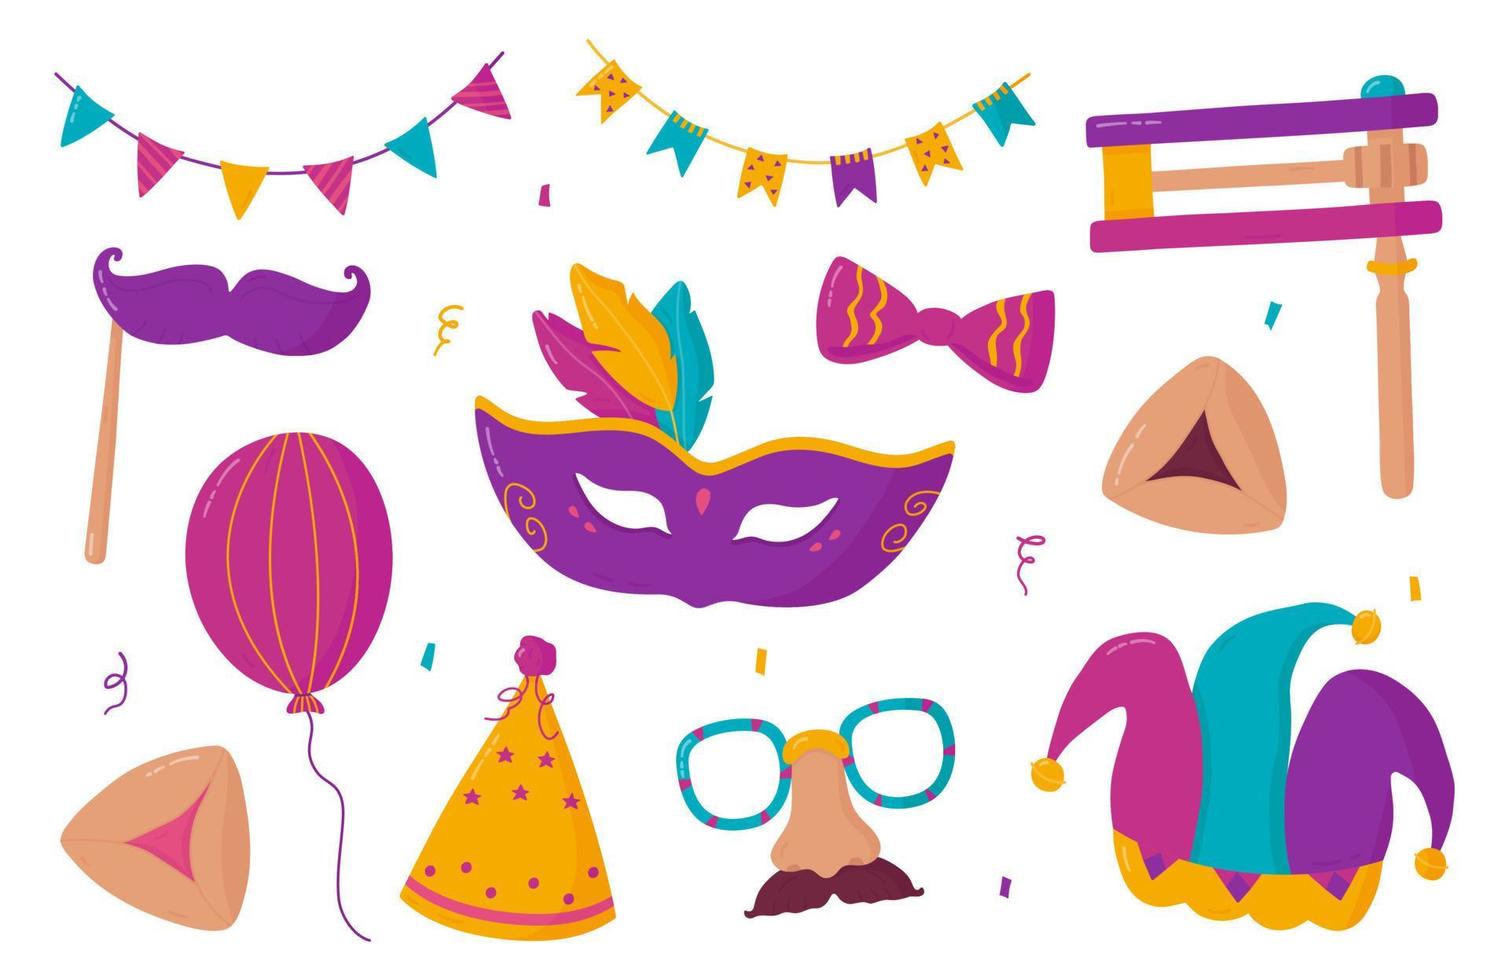 Purim-Elemente gesetzt. vektorsammlung von feiertagskarnevalsmasken, gragger, hamantaschen-keksen, jesterhut, ballon, schleife, konfetti, partyhut und girlande einzeln auf weißem hintergrund vektor